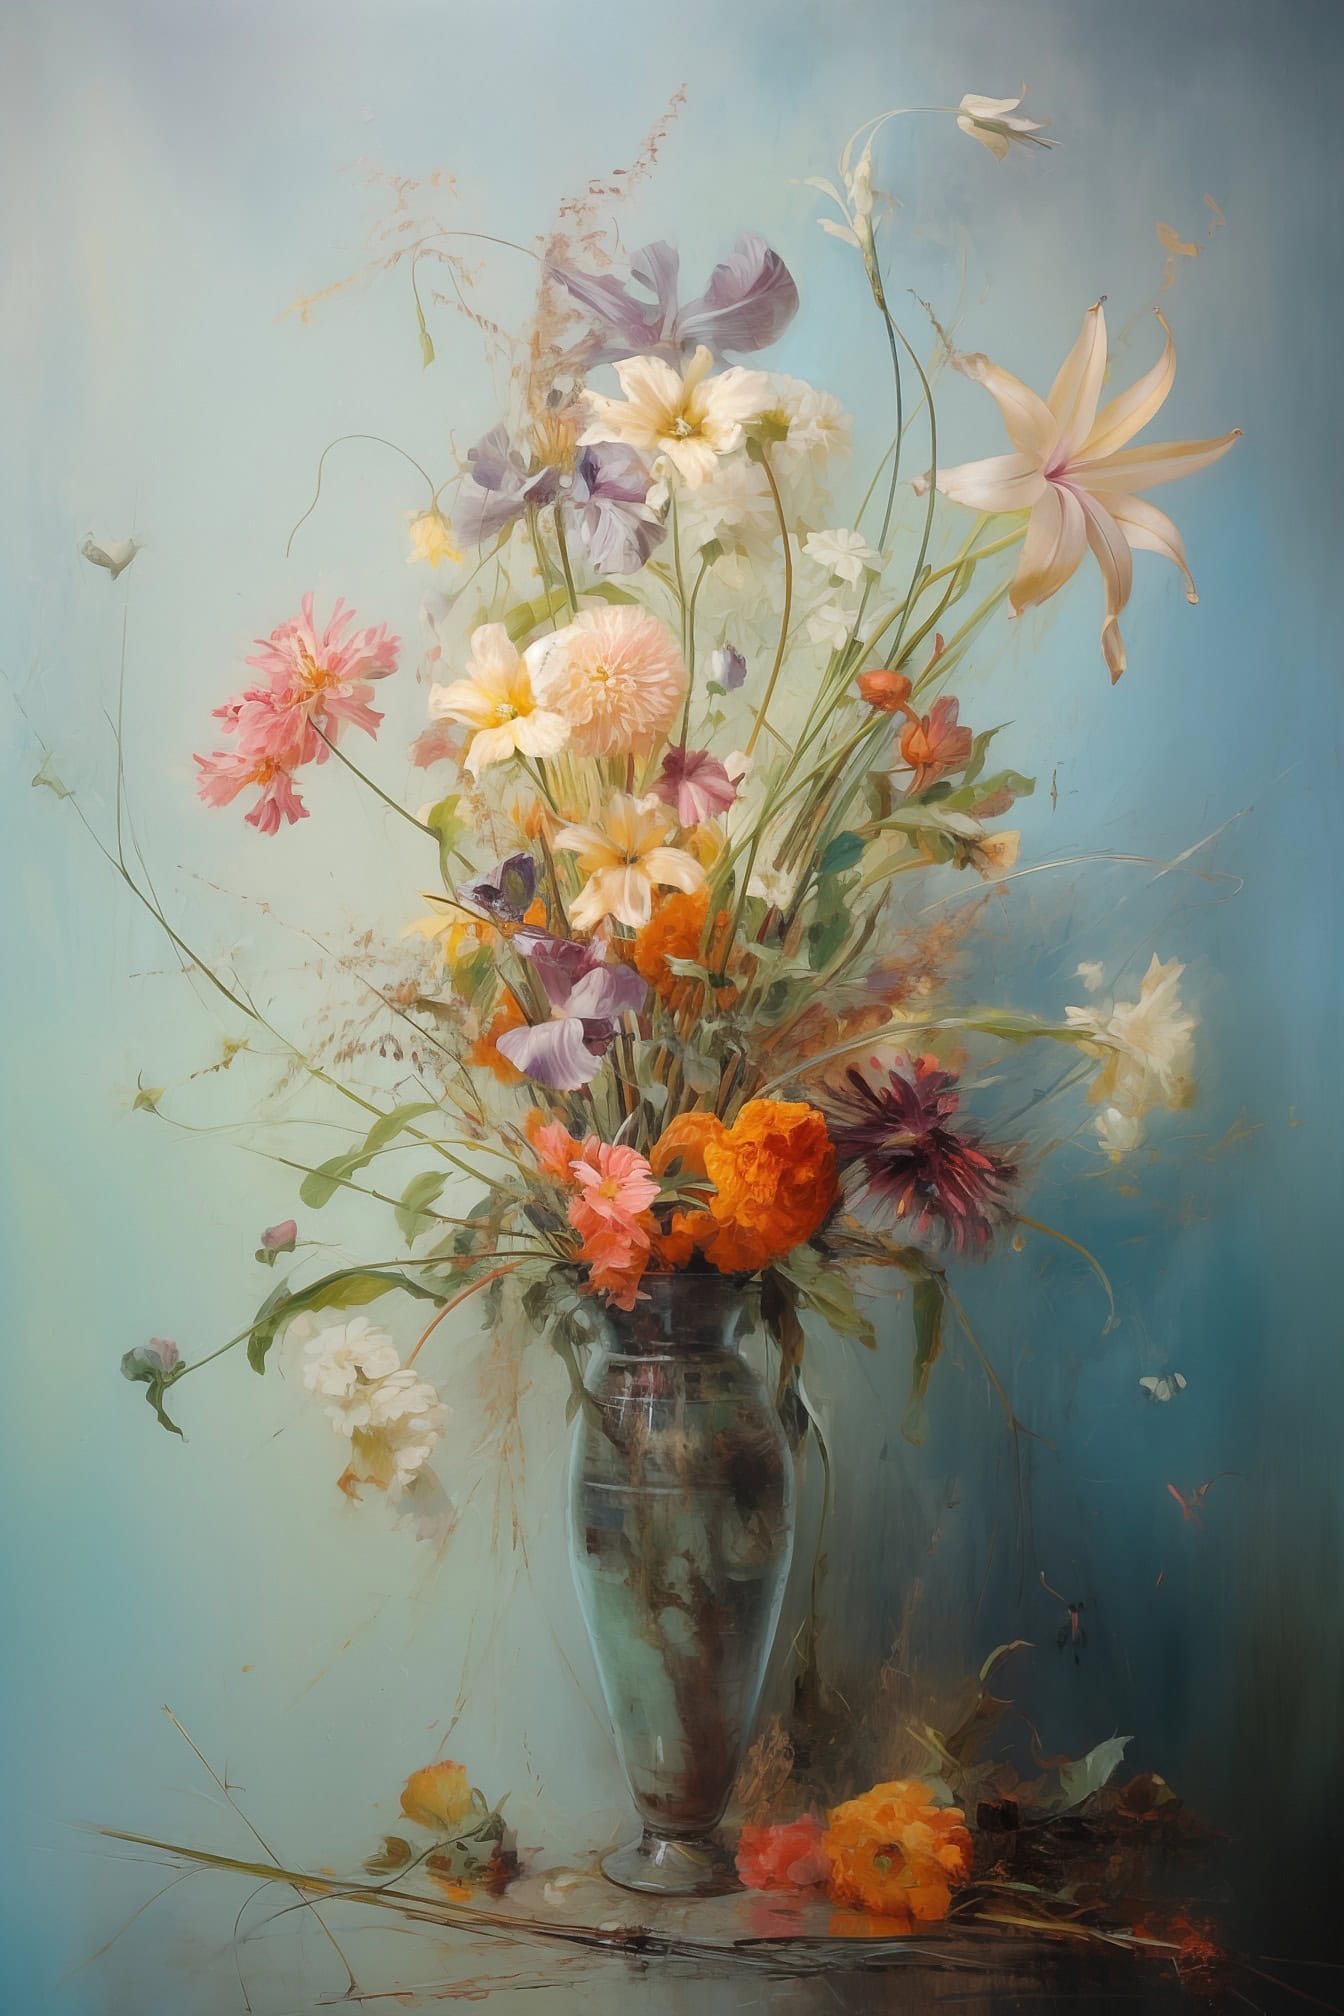 Stillleben Ölgemälde der Vase mit bunten Blumen darin mit hellblauem Hintergrund